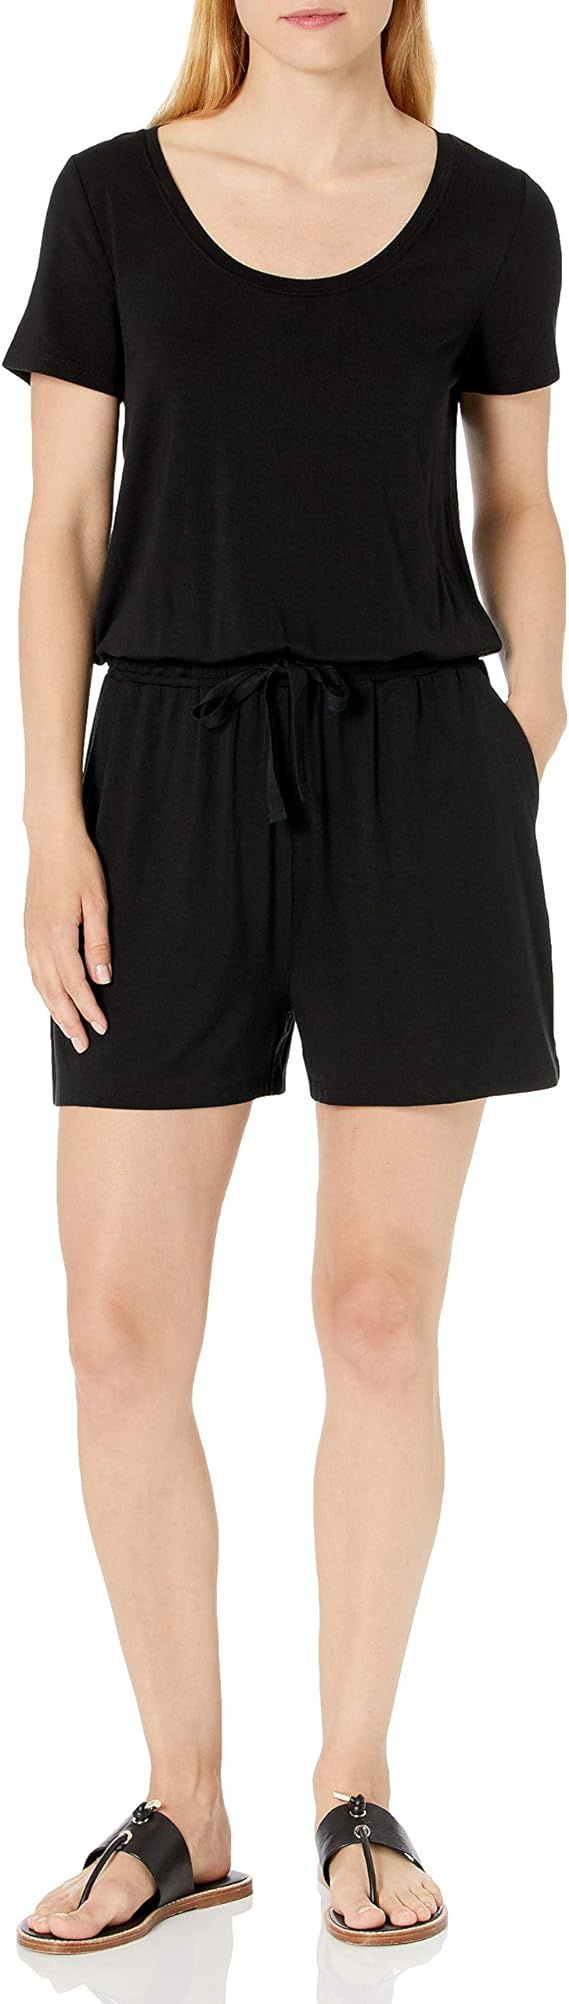 Amazon Essentials Women's Short-Sleeve Scoop Neck Romper | Amazon (US)